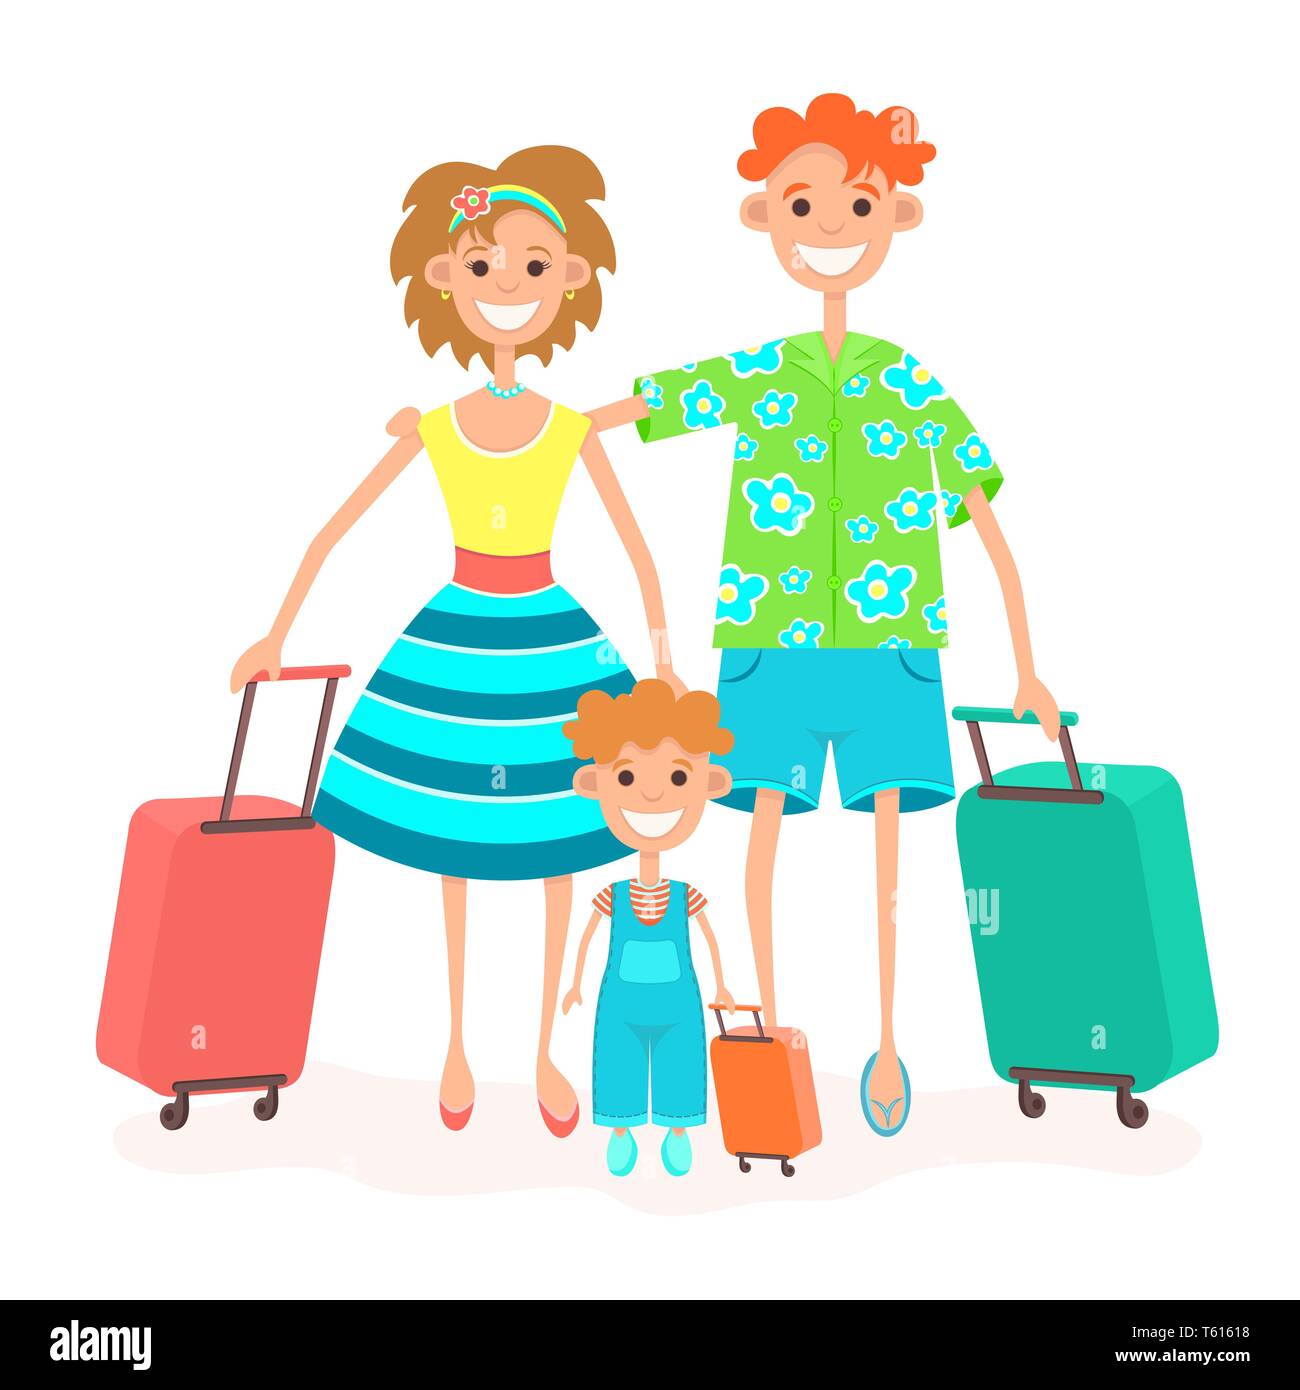 Familie geht auf Urlaub, bunte Zeichnung. Zeichentrickfigur Vater, Mutter und Kind mit Koffer auf Rädern klicken Sie auf in der reise Reisen urlaub, Isola Stock Vektor